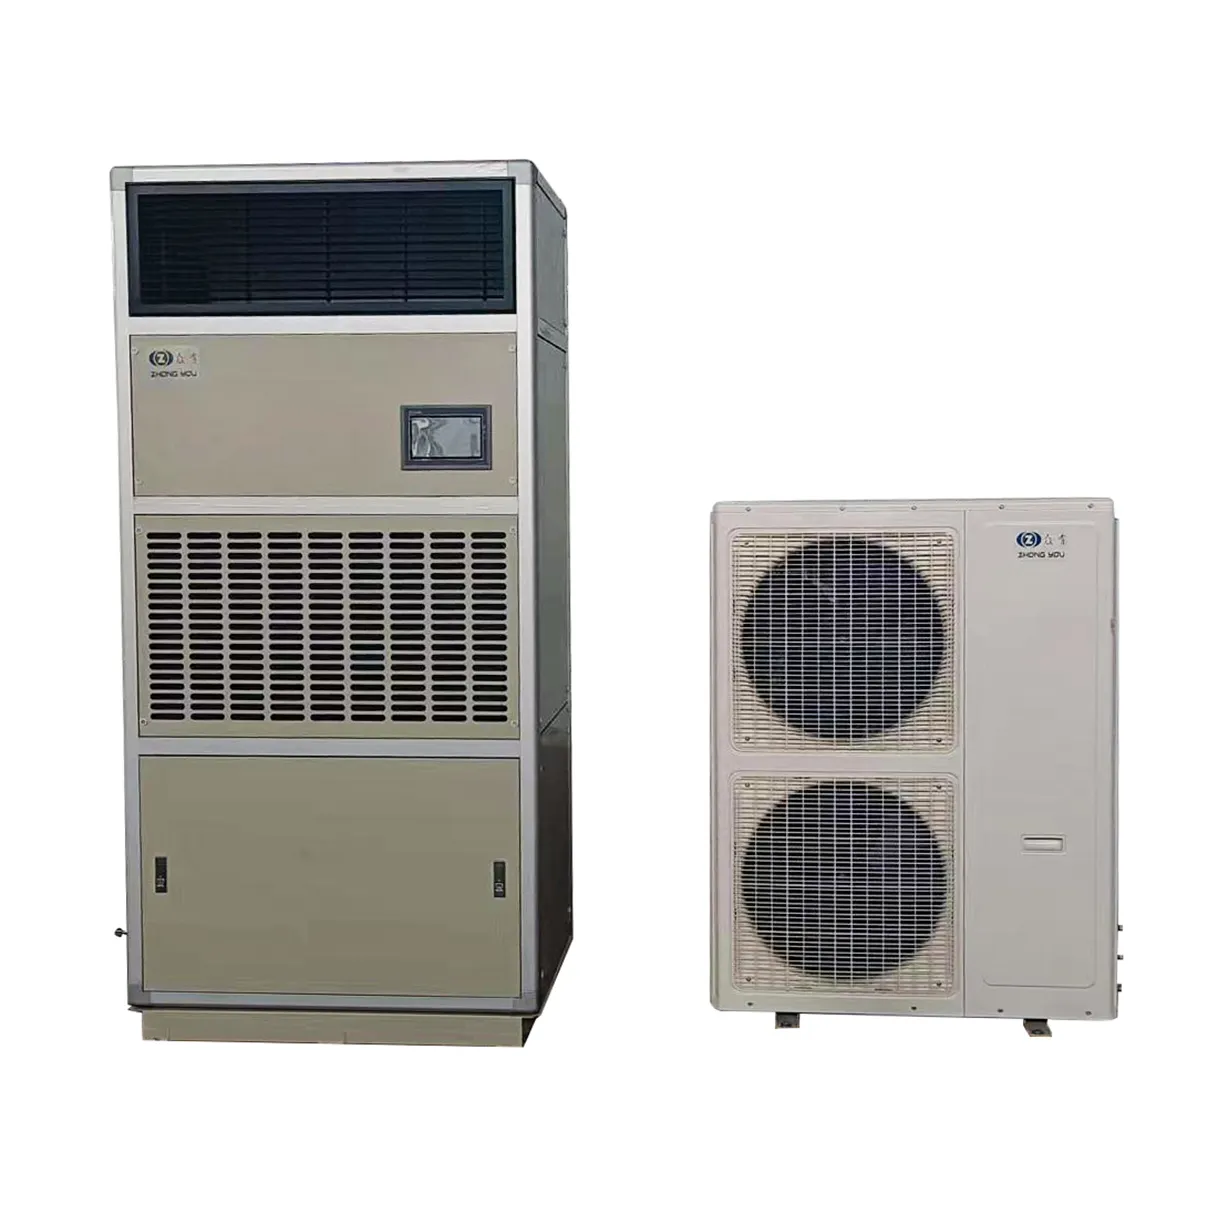 Ar condicionado fixo em parede, 1p 1.5p 5p aquecimento e resfriamento industrial à prova de explosão